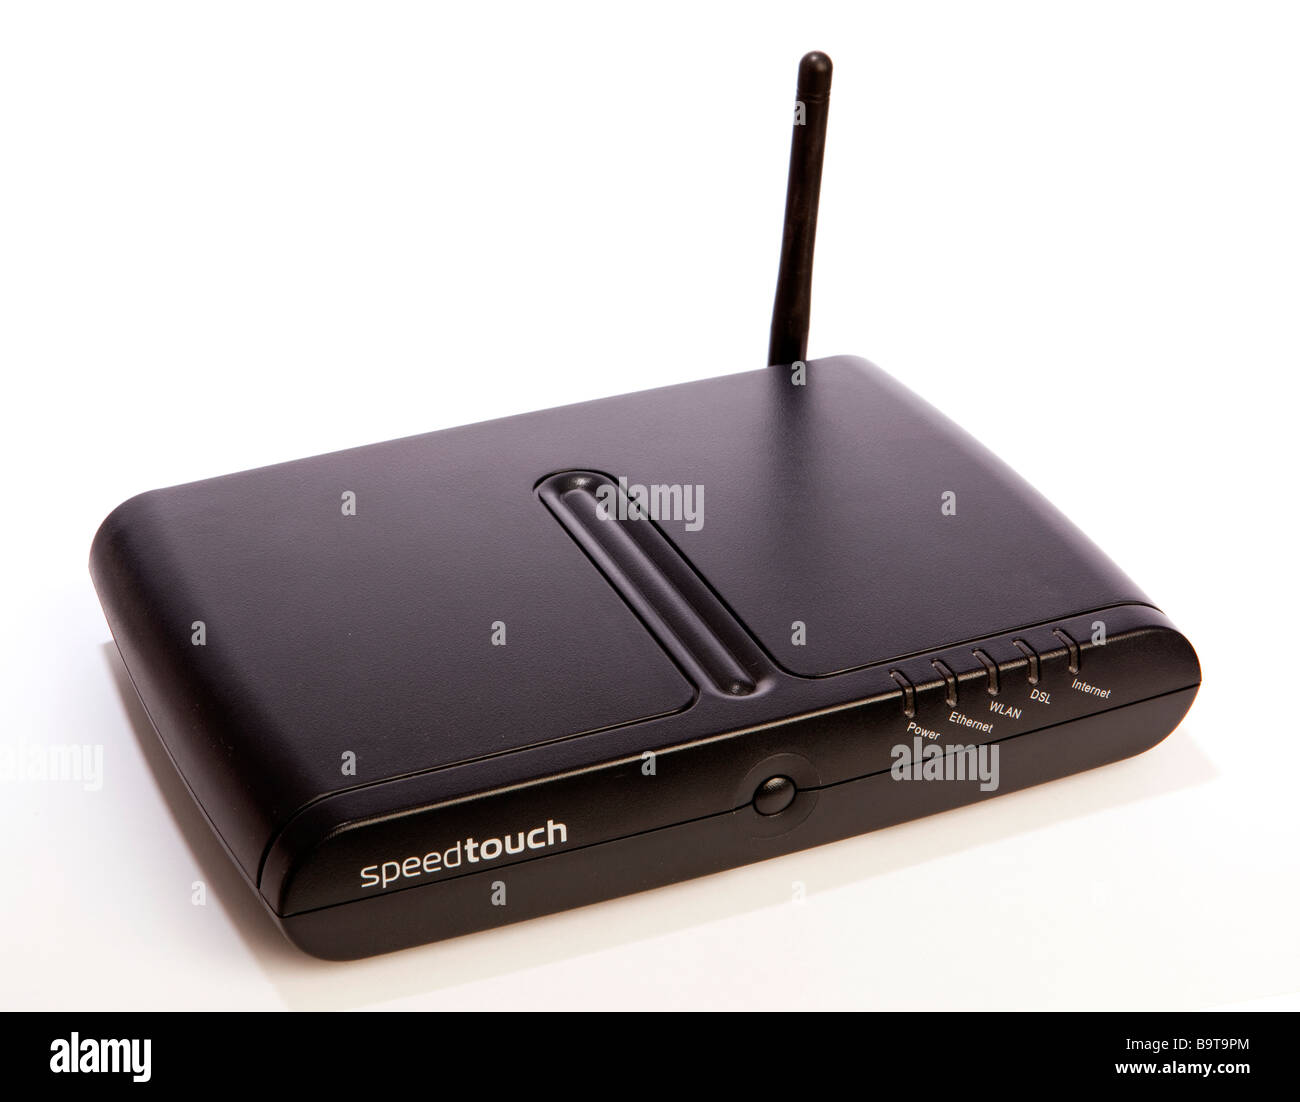 Wireless-Konnektivität Speedtouch WLAN ADSL router Stockfoto